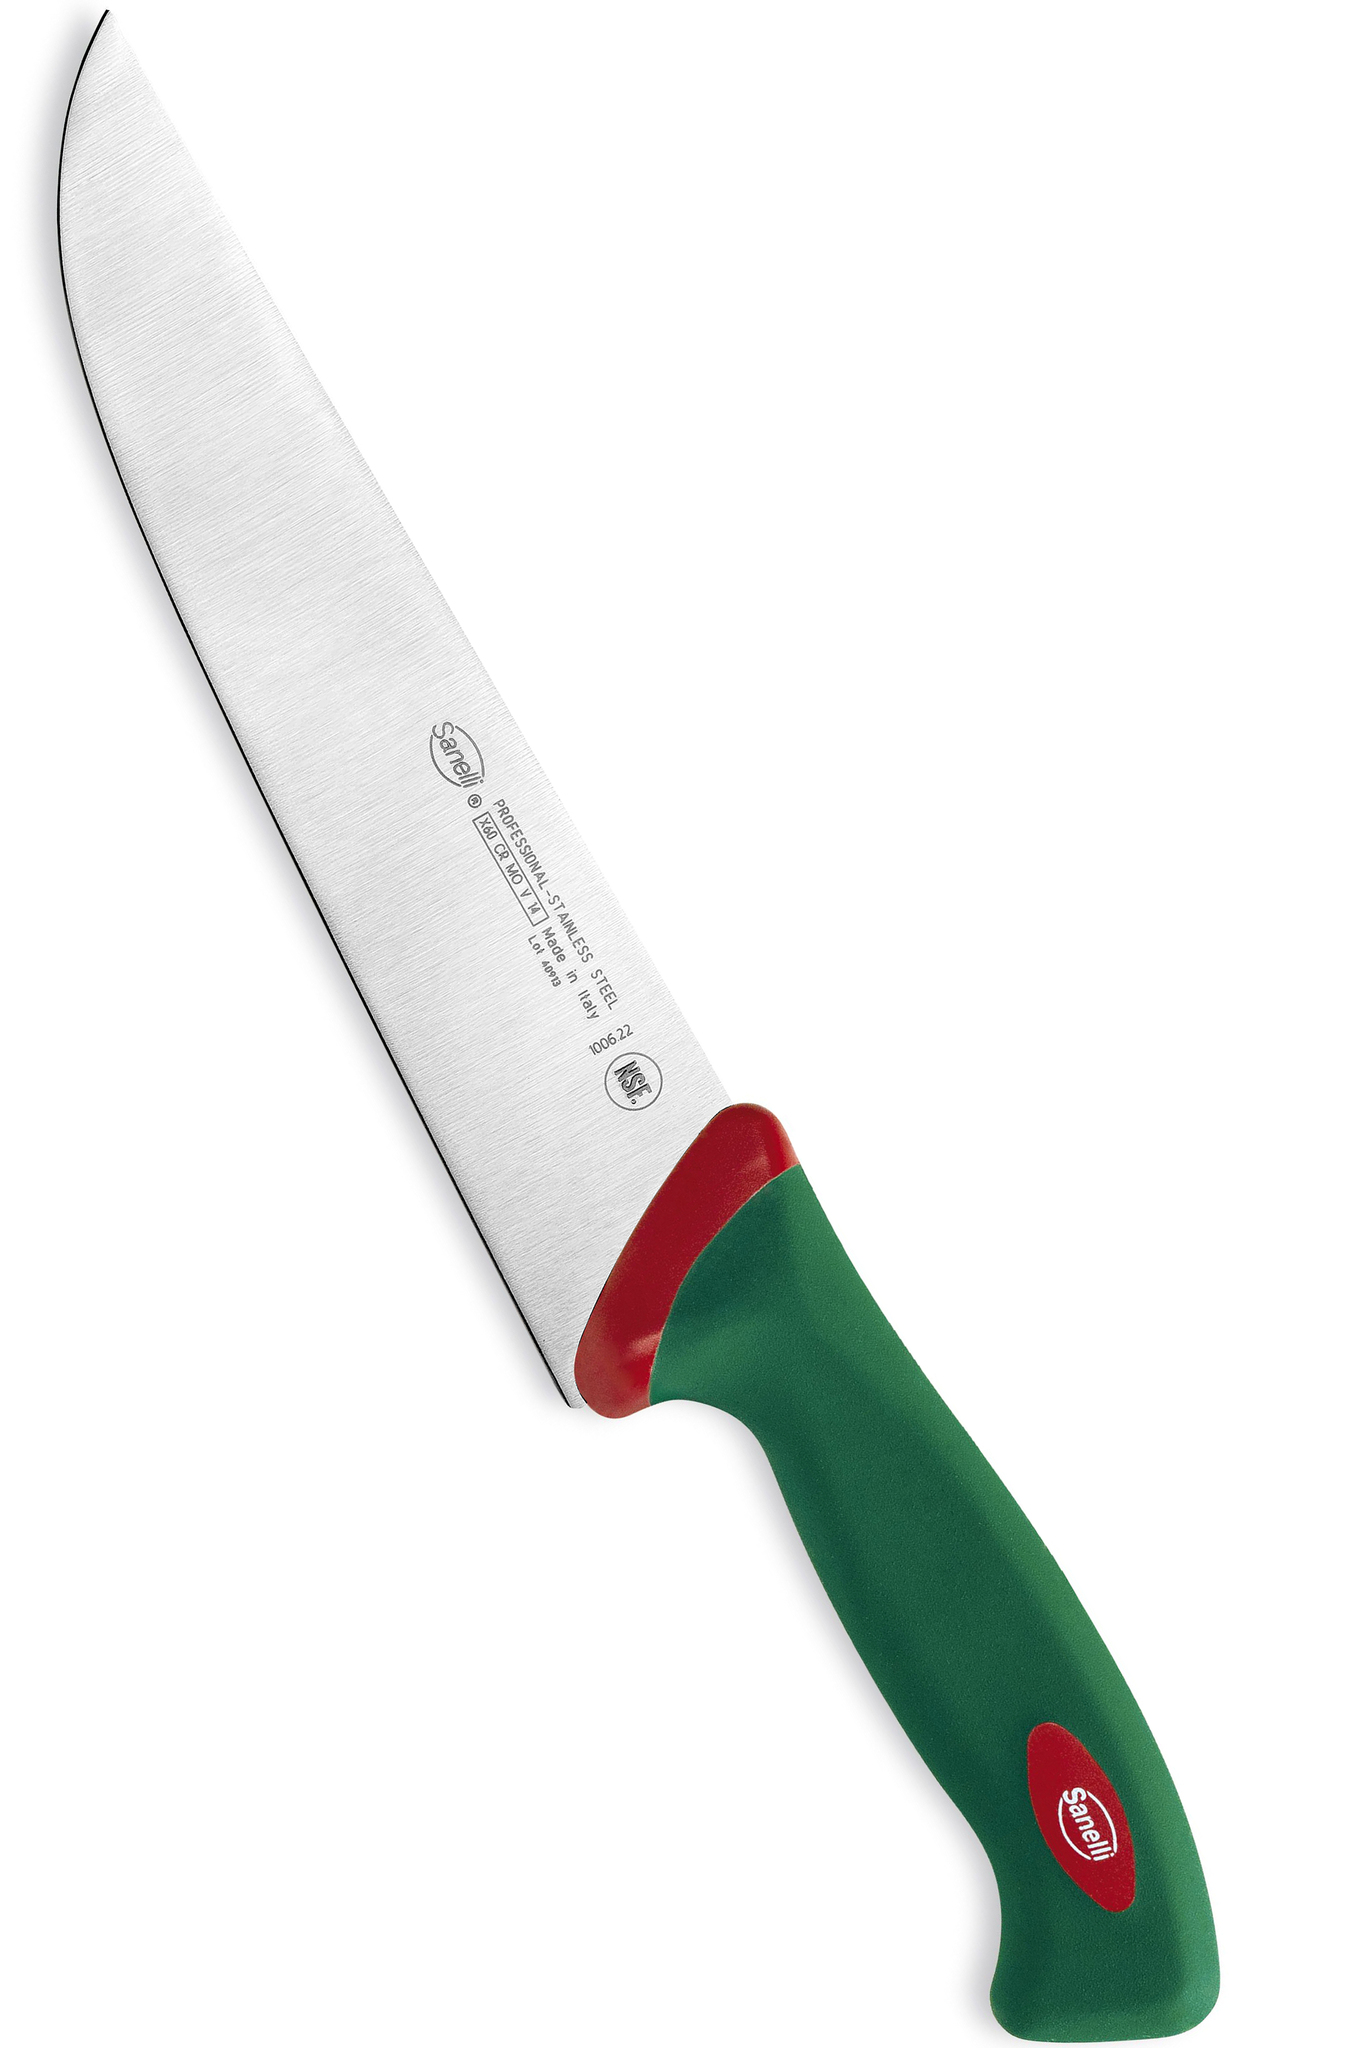 Sanelli - Couteau Dentelé Français 22cm. - 103622 - couteau de cuisine